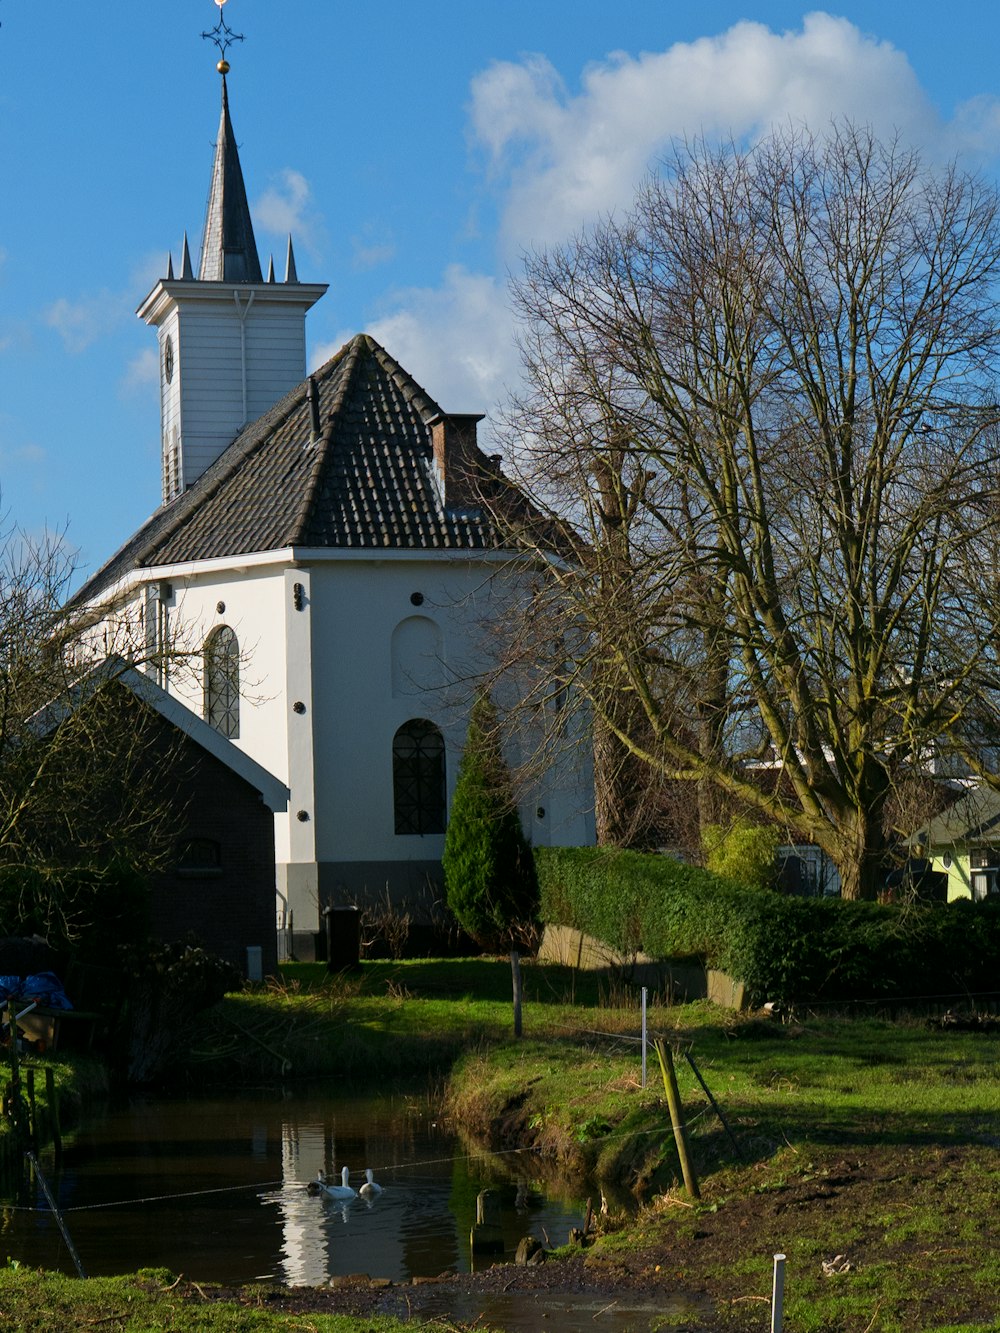 eine Kirche mit einem Teich davor